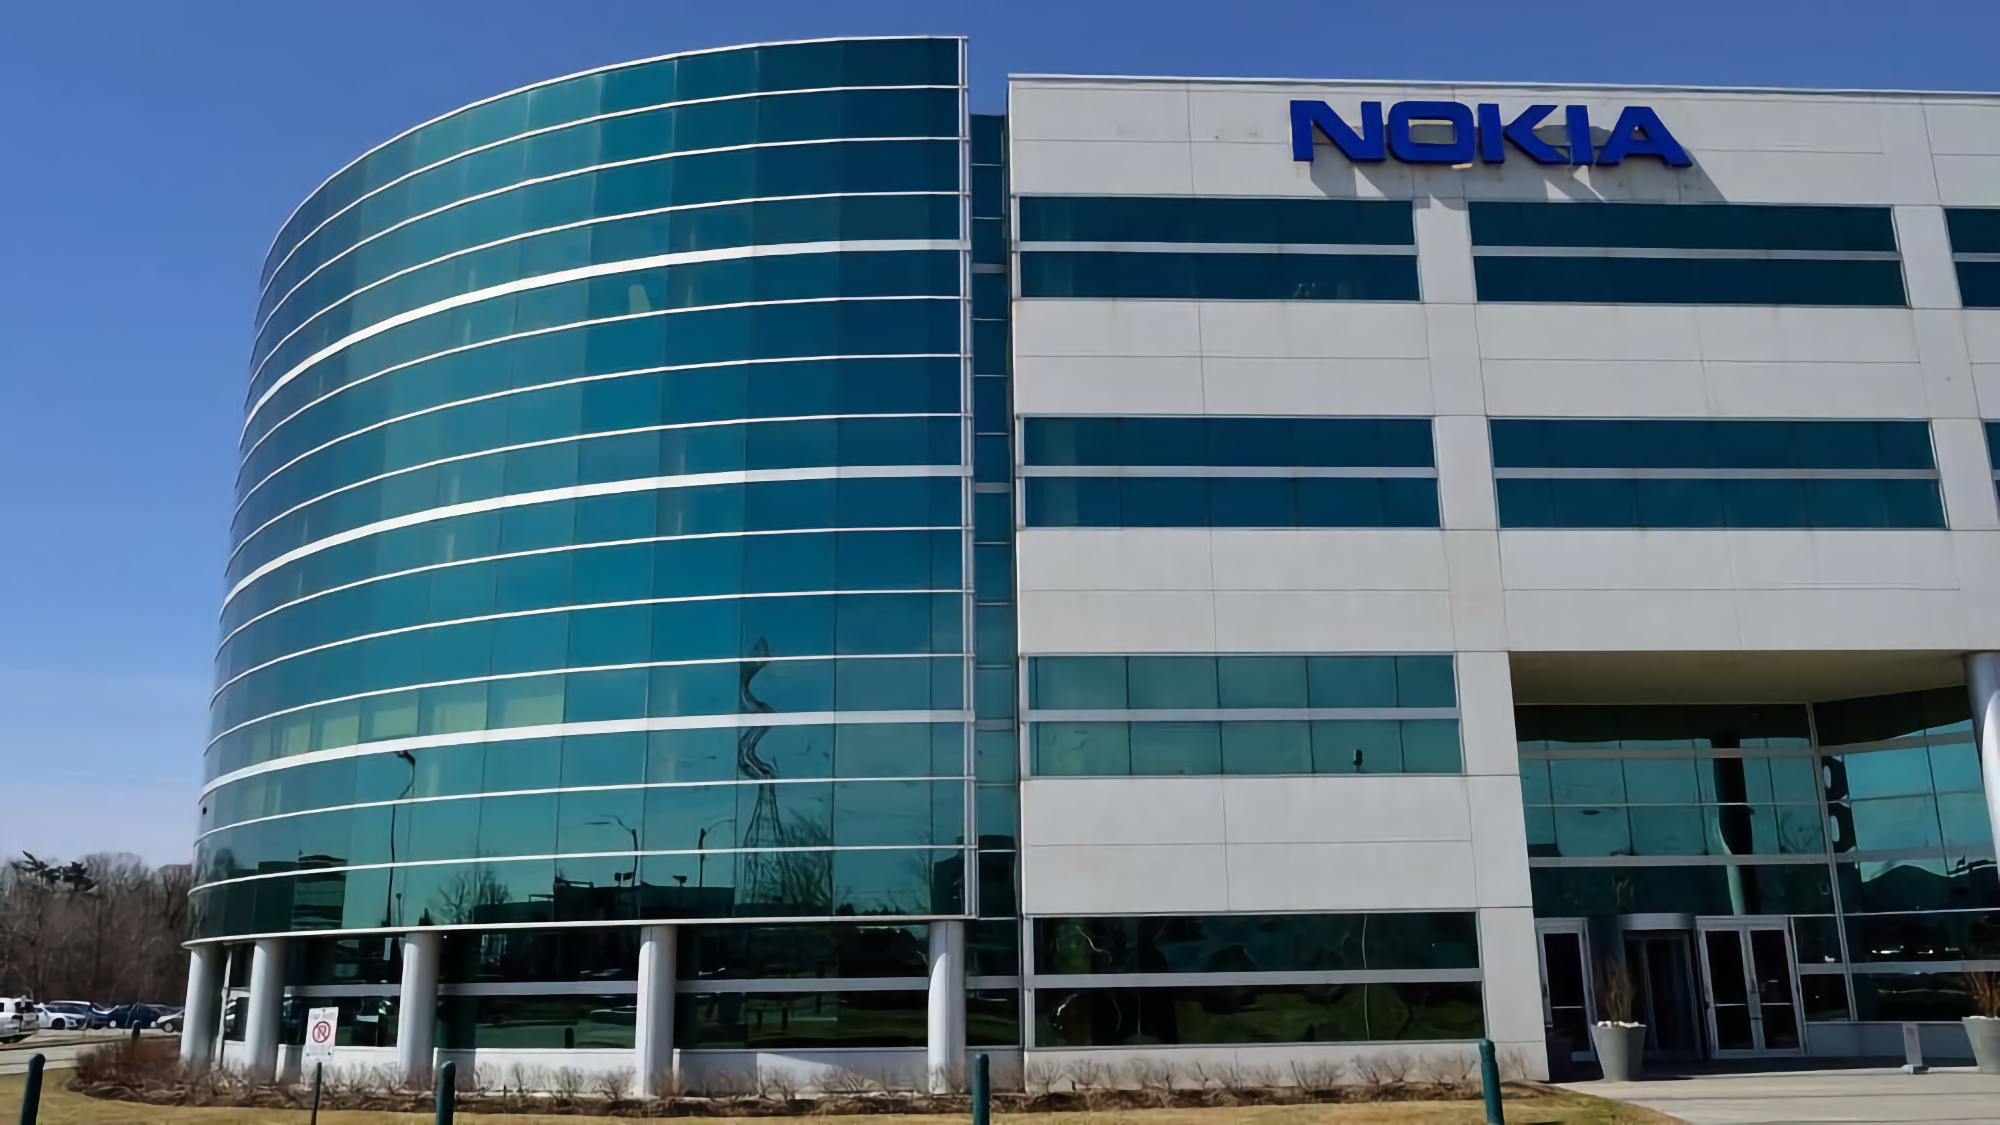 Nokia anunció su retirada del mercado ruso